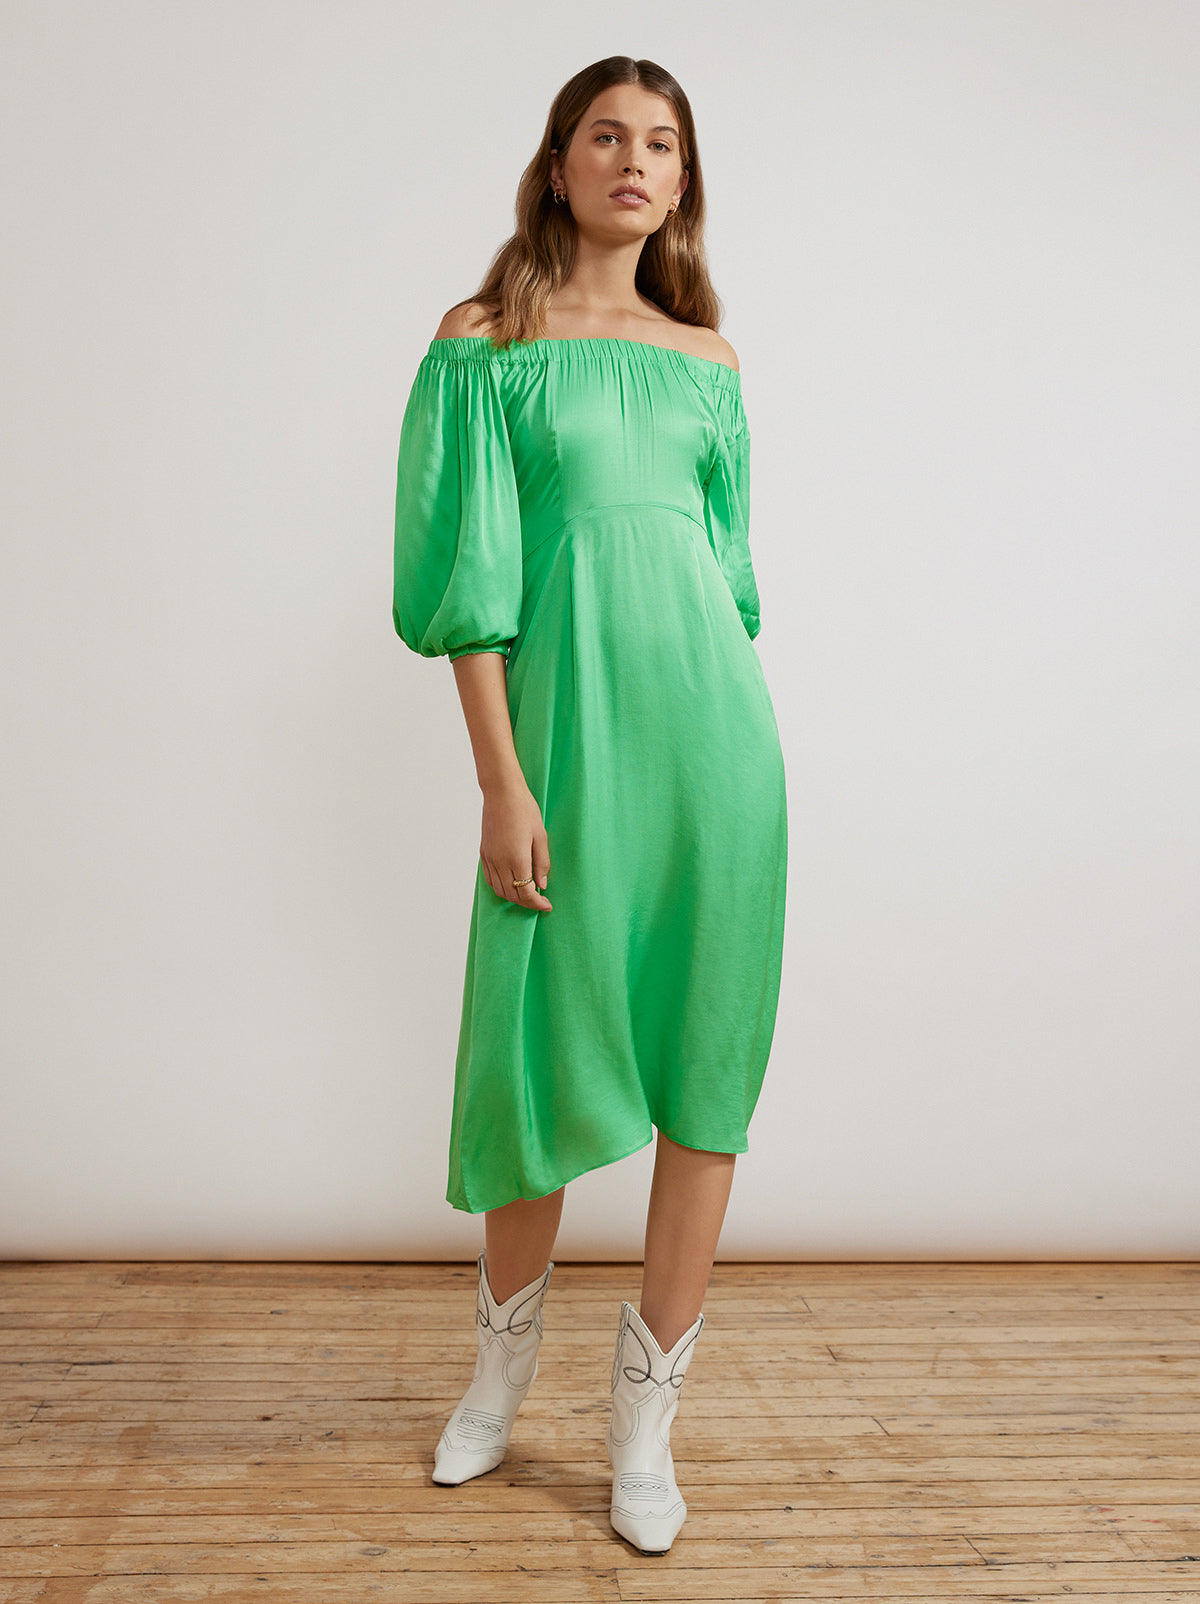 Della Apple Green Dress By KITRI Studio